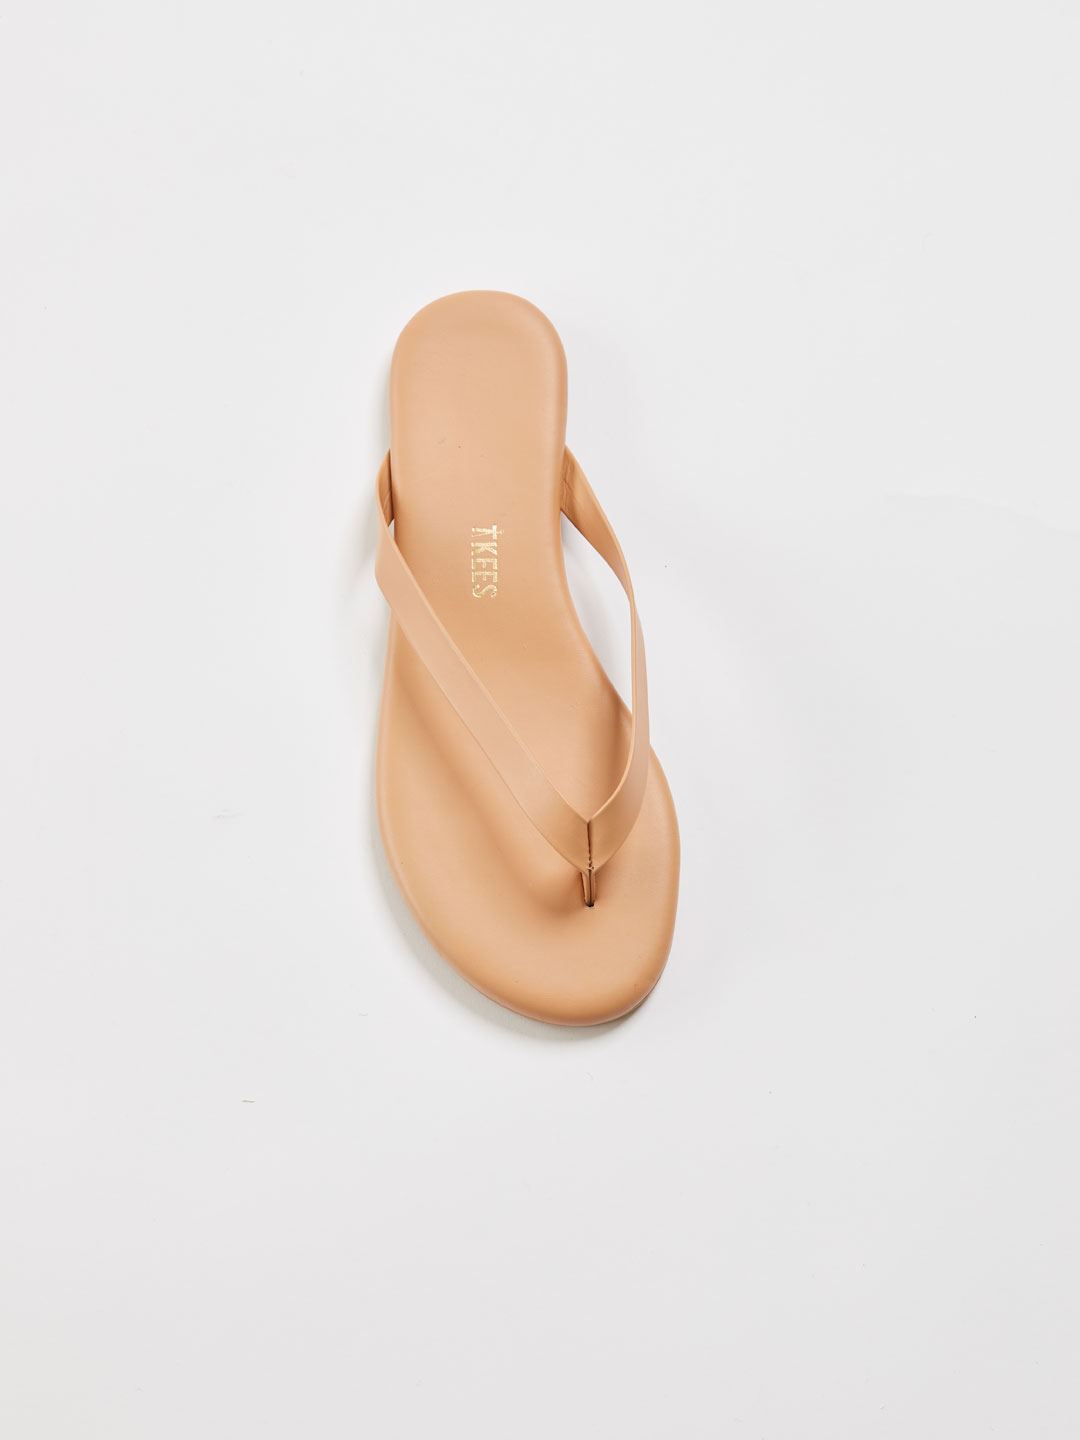 BOYFRIEND Bold Flip Flop Sandals - Pout/Beige